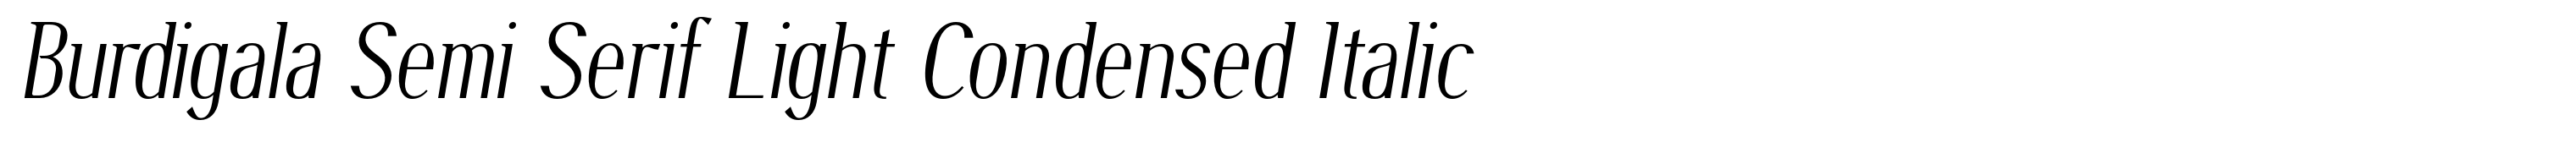 Burdigala Semi Serif Light Condensed Italic